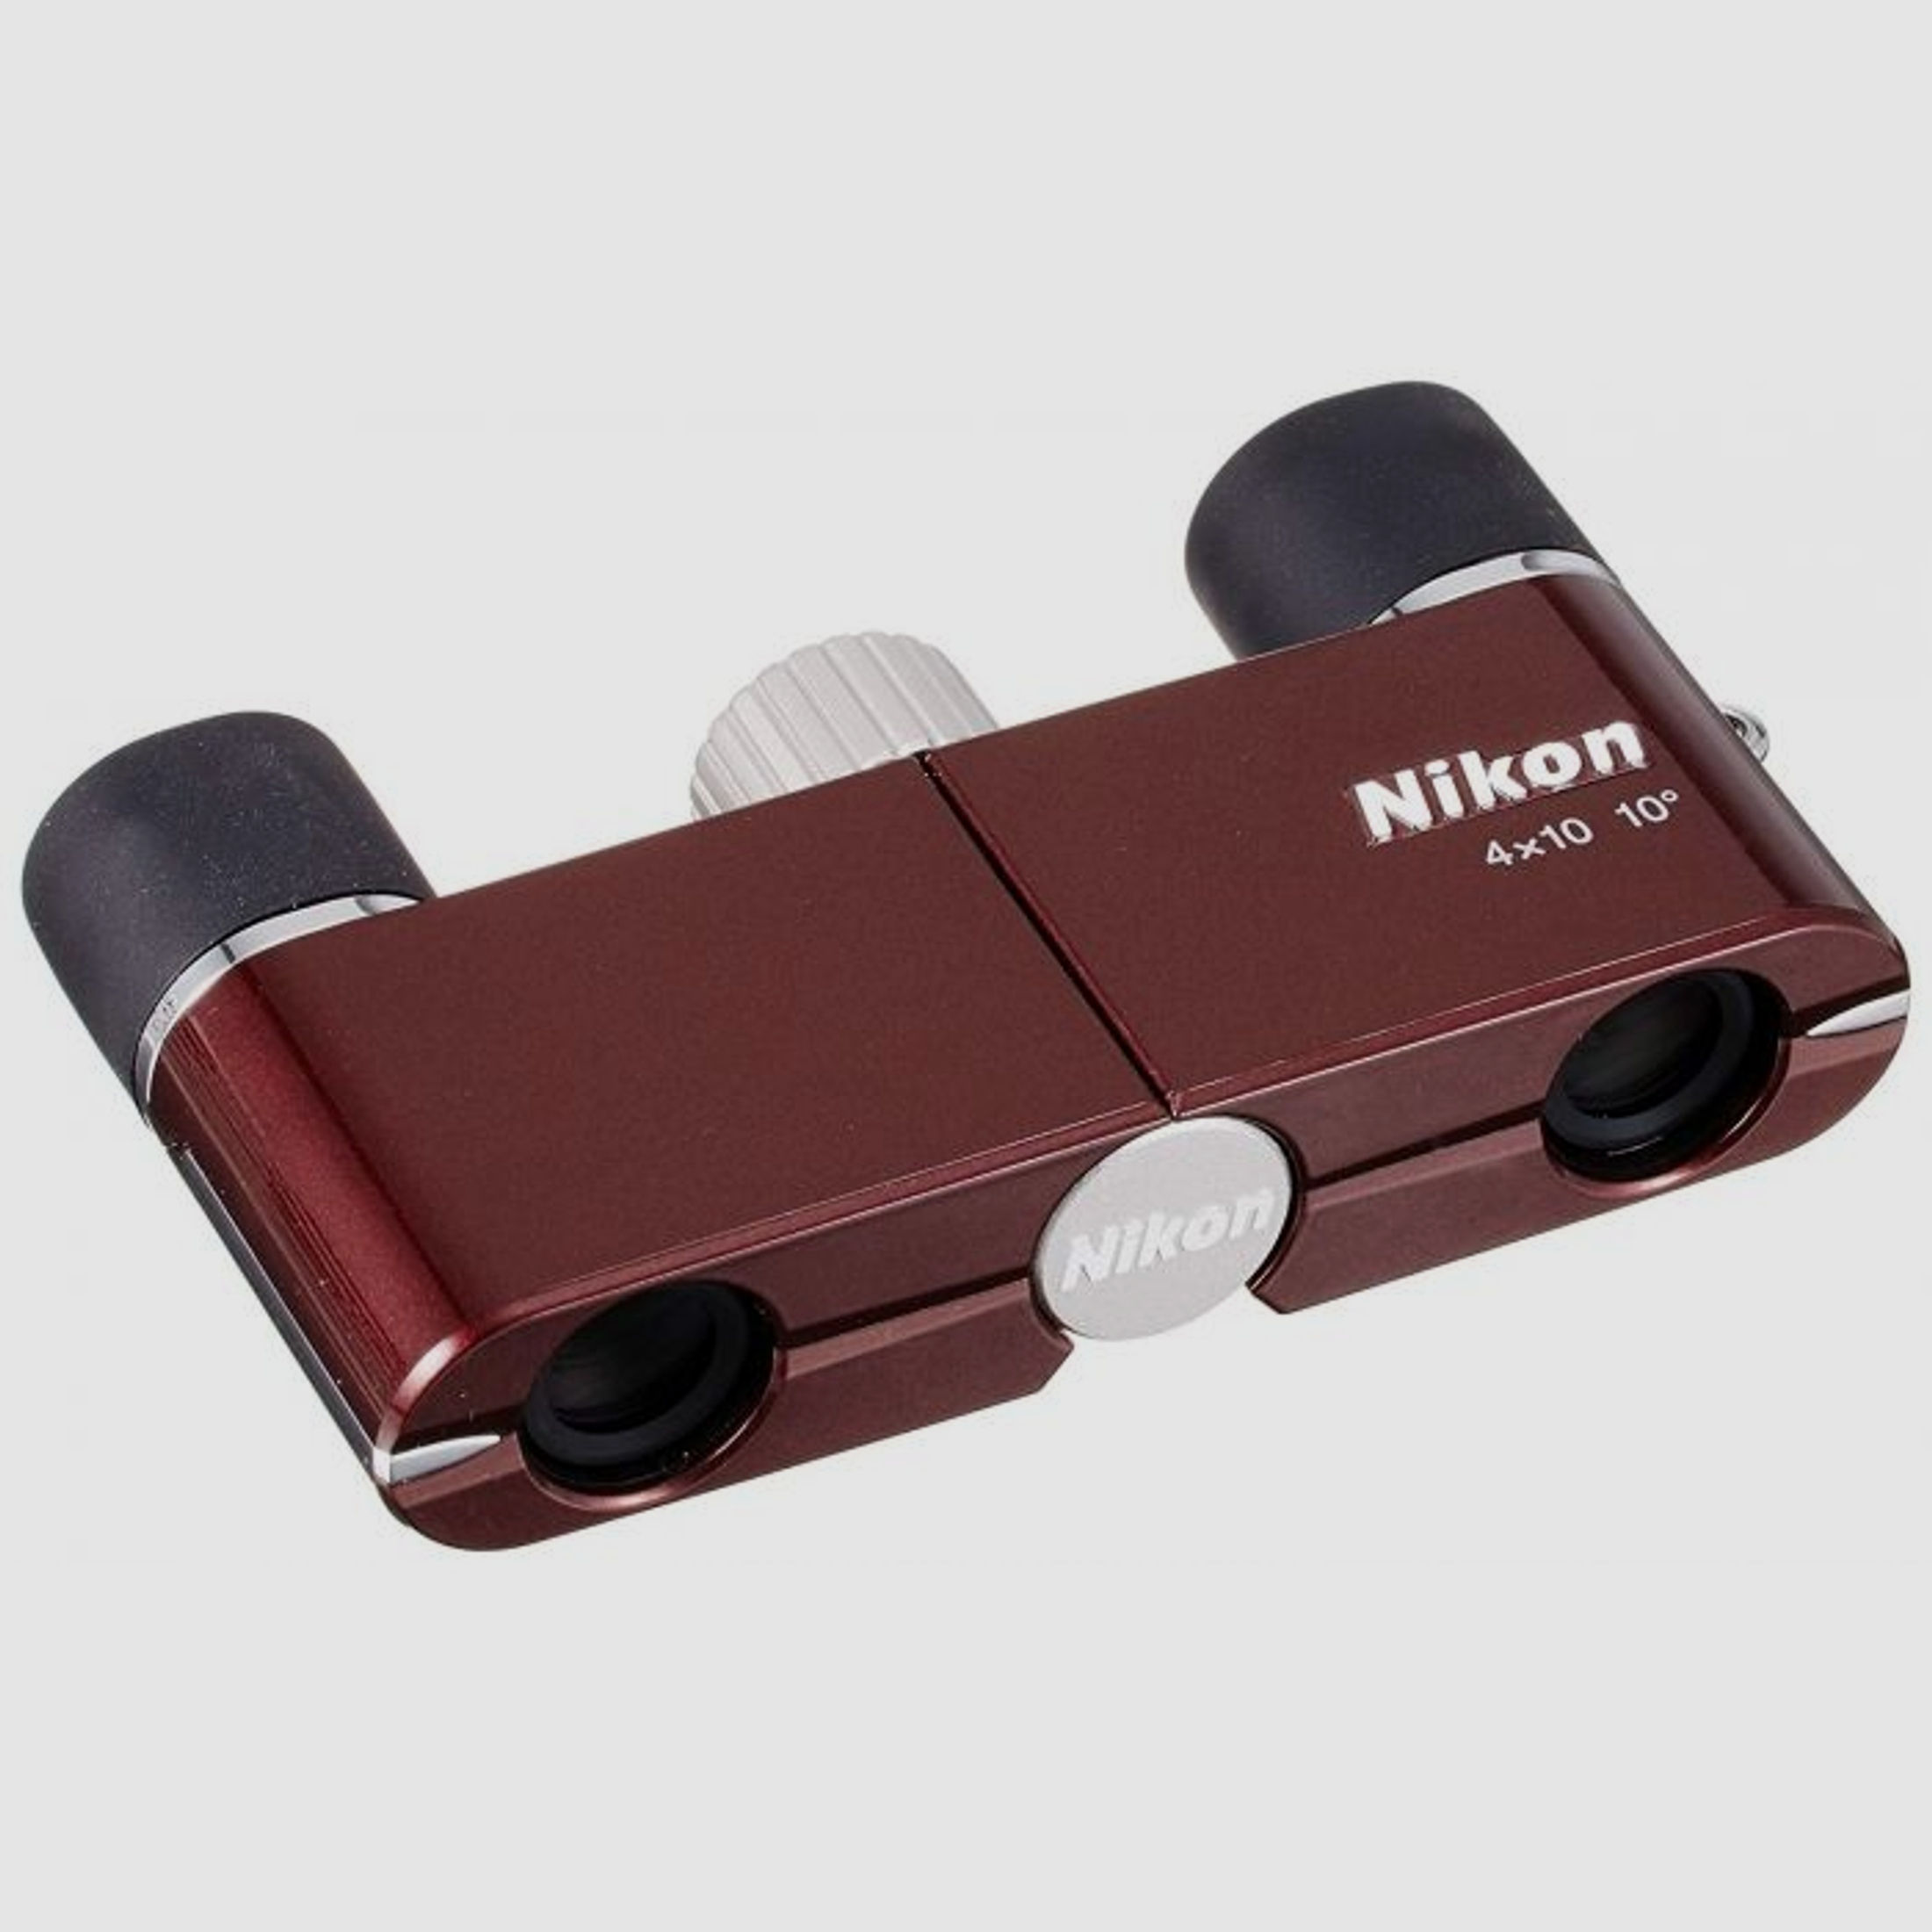 Nikon Nikon Mikron 4x10 DCF burgund